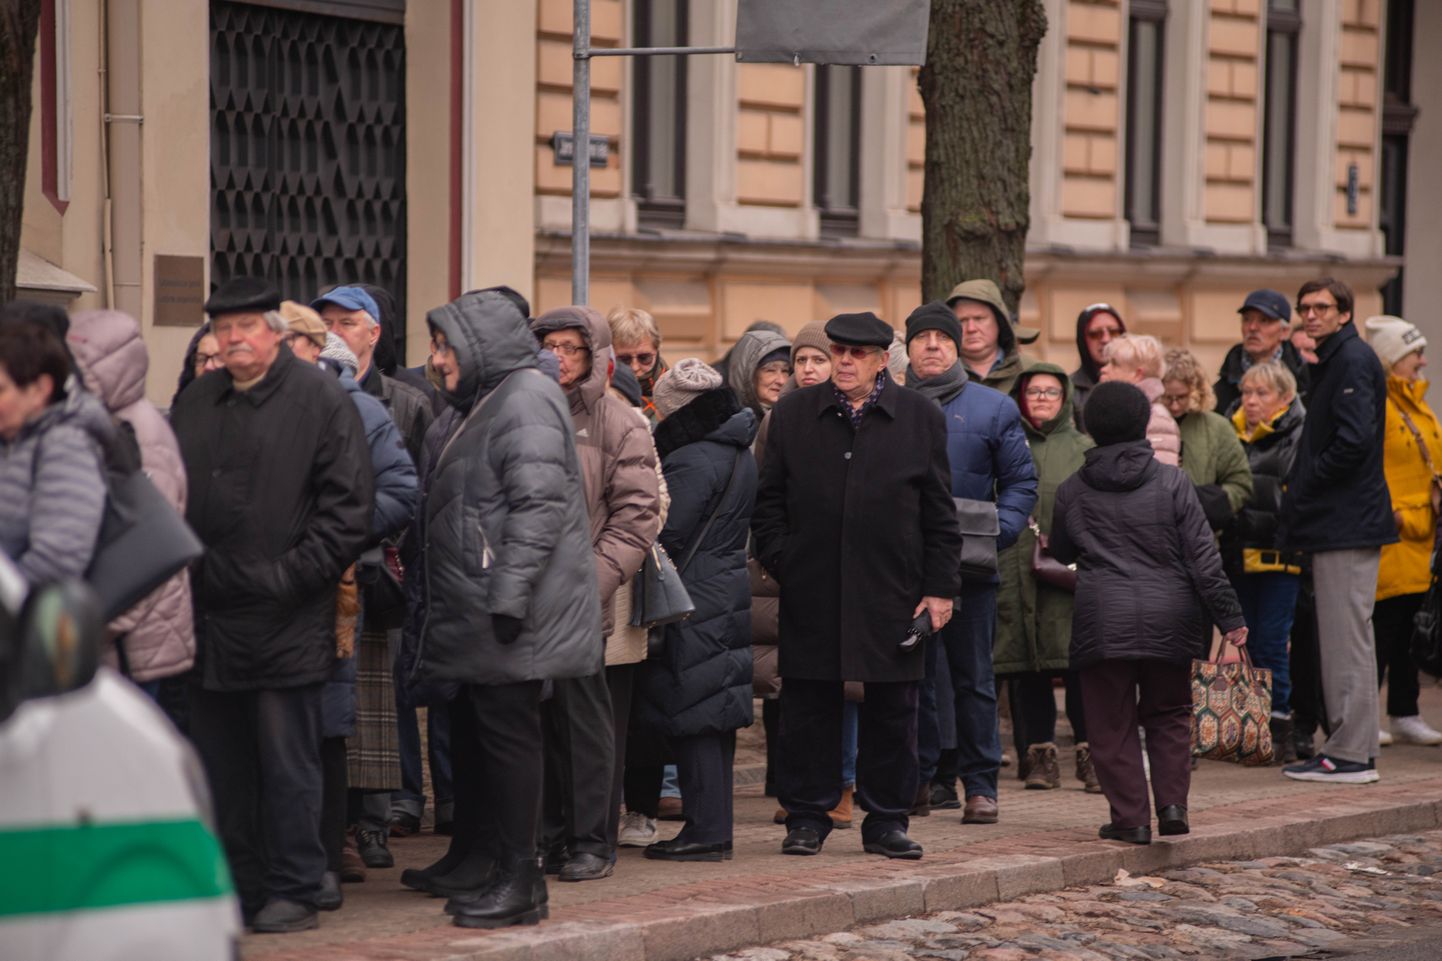 Krievijas vēstniecībā Rīgā aizvien turpinās "balsošana" par jauno Krievijas prezidentu